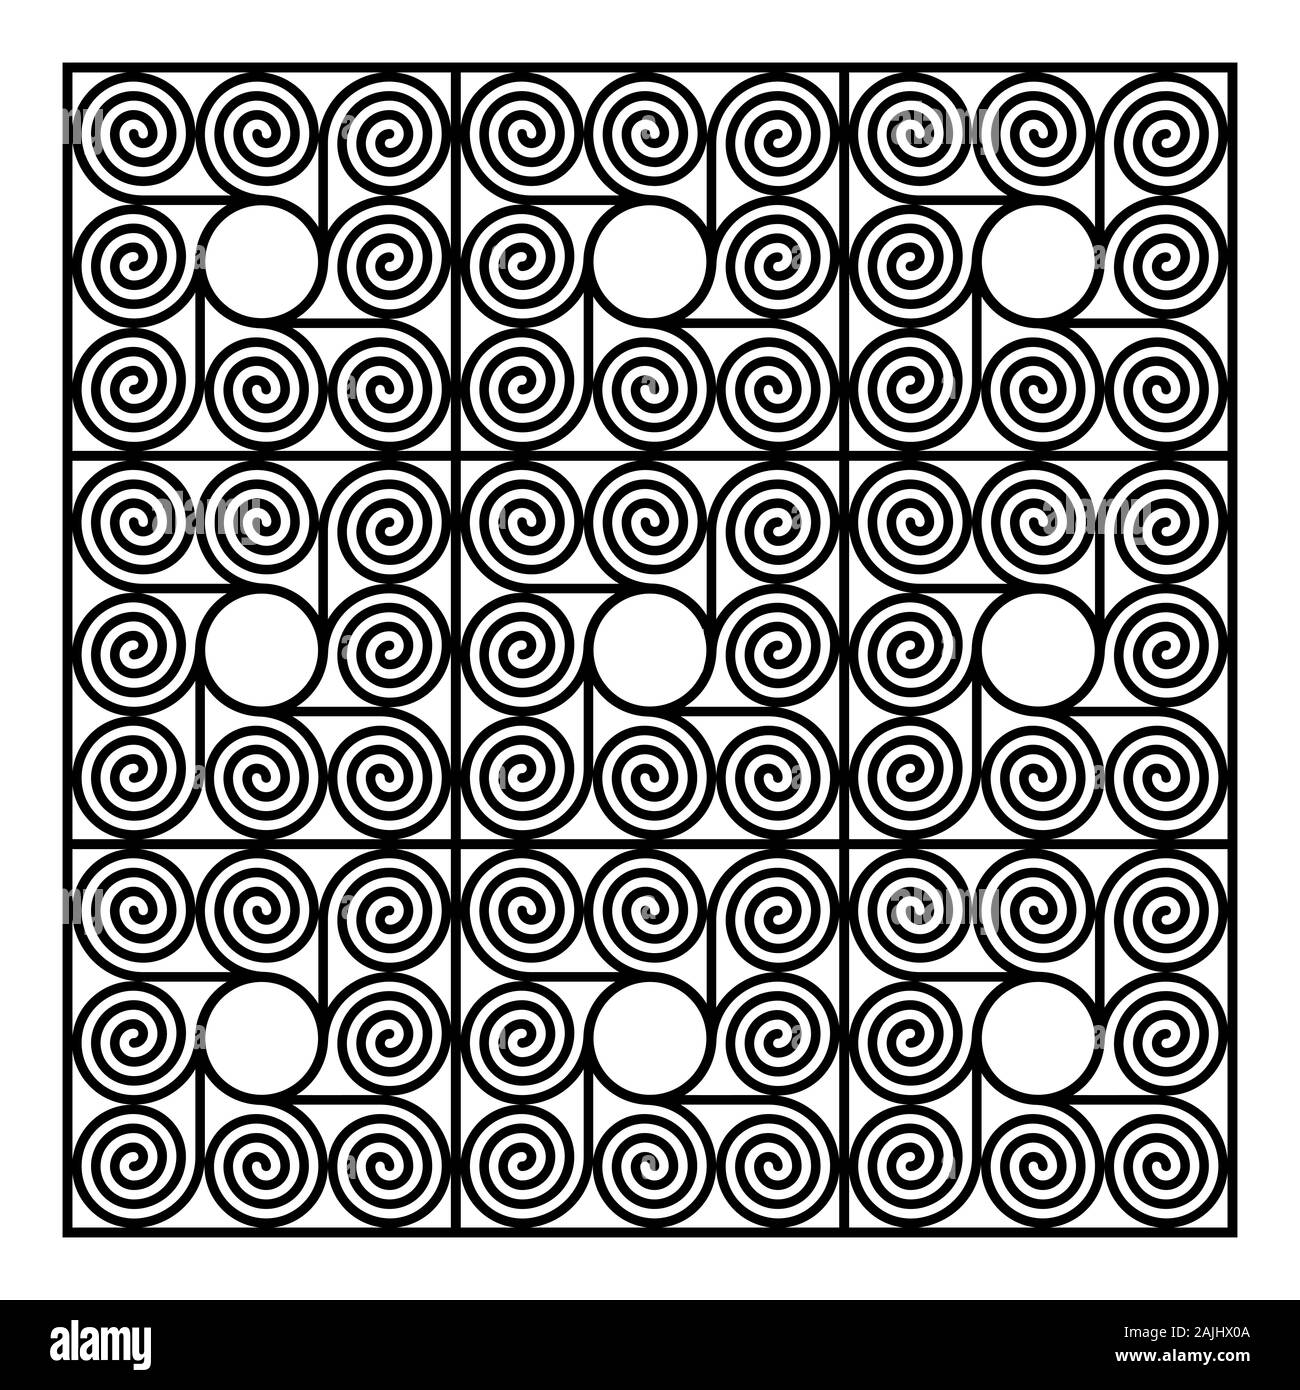 Hintergrund der neun quadratische Fliesen, aus acht arithmetische Spiralen in einem Kreis. Muster der Archimedischen Spirale der gleichen Abständen. Stockfoto